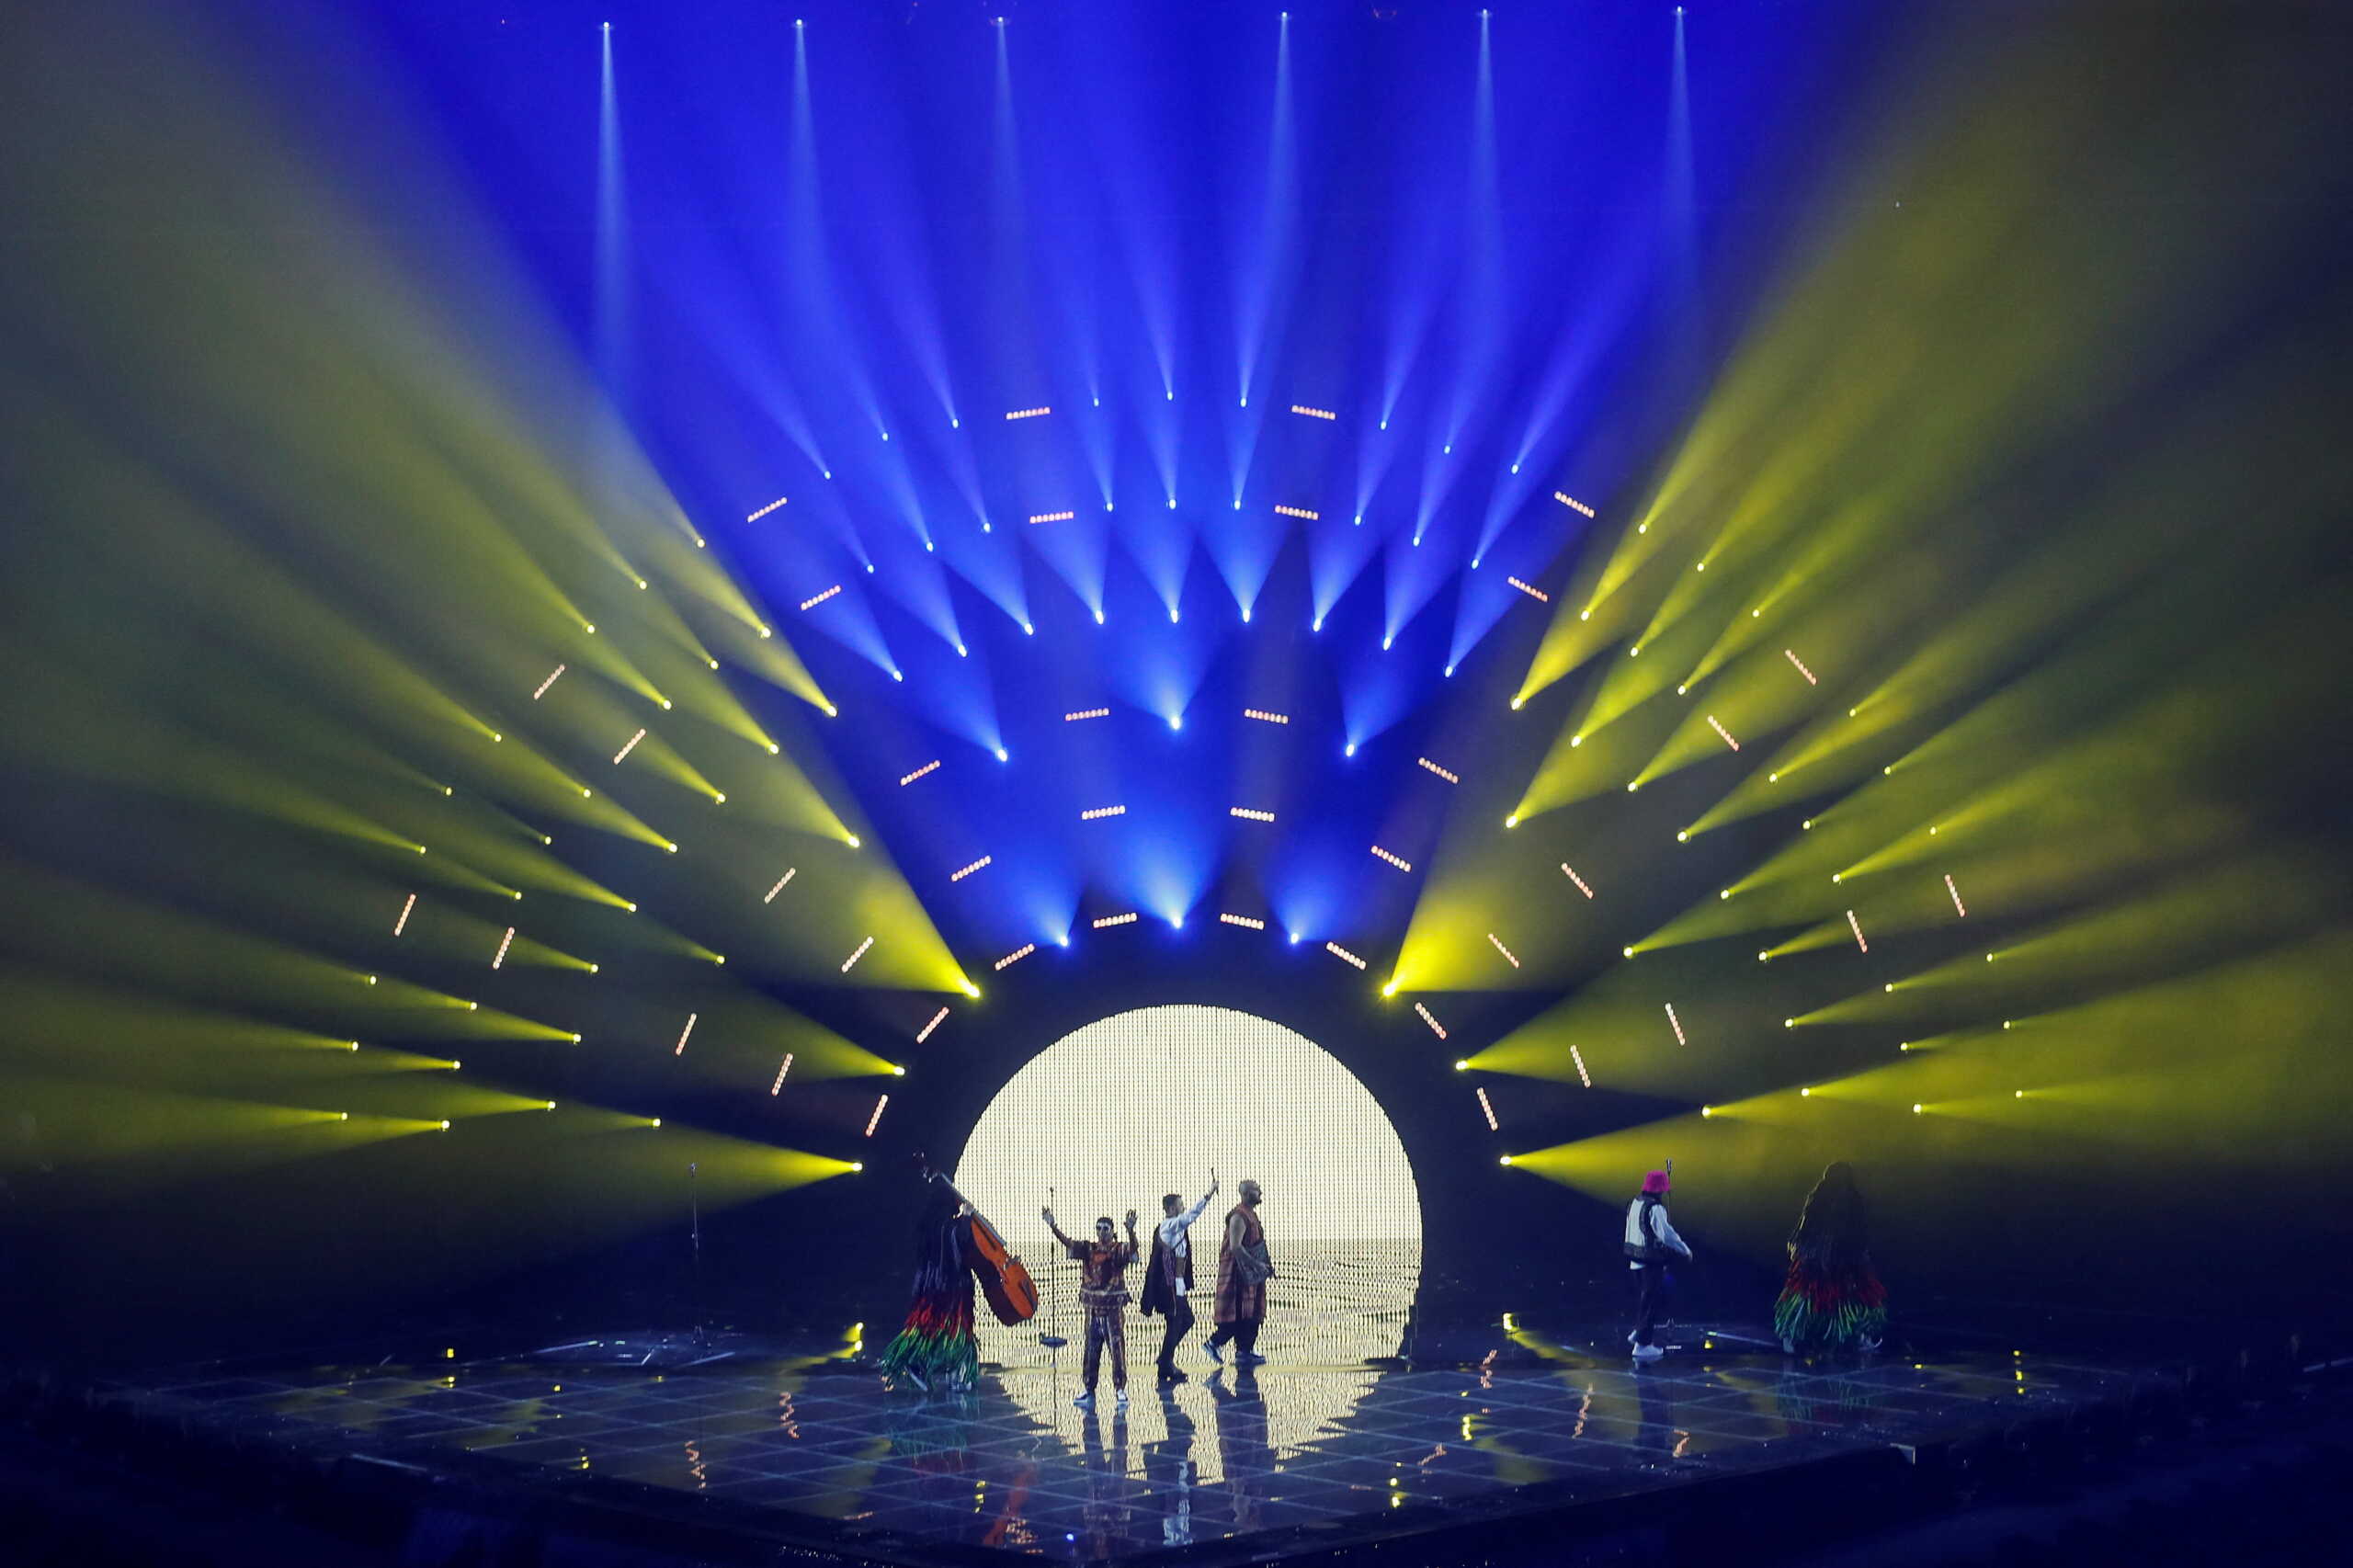 ΝΑΤΟ για Eurovision 2022: Η νίκη της Ουκρανίας δείχνει την τεράστια υποστήριξη της Ευρώπης